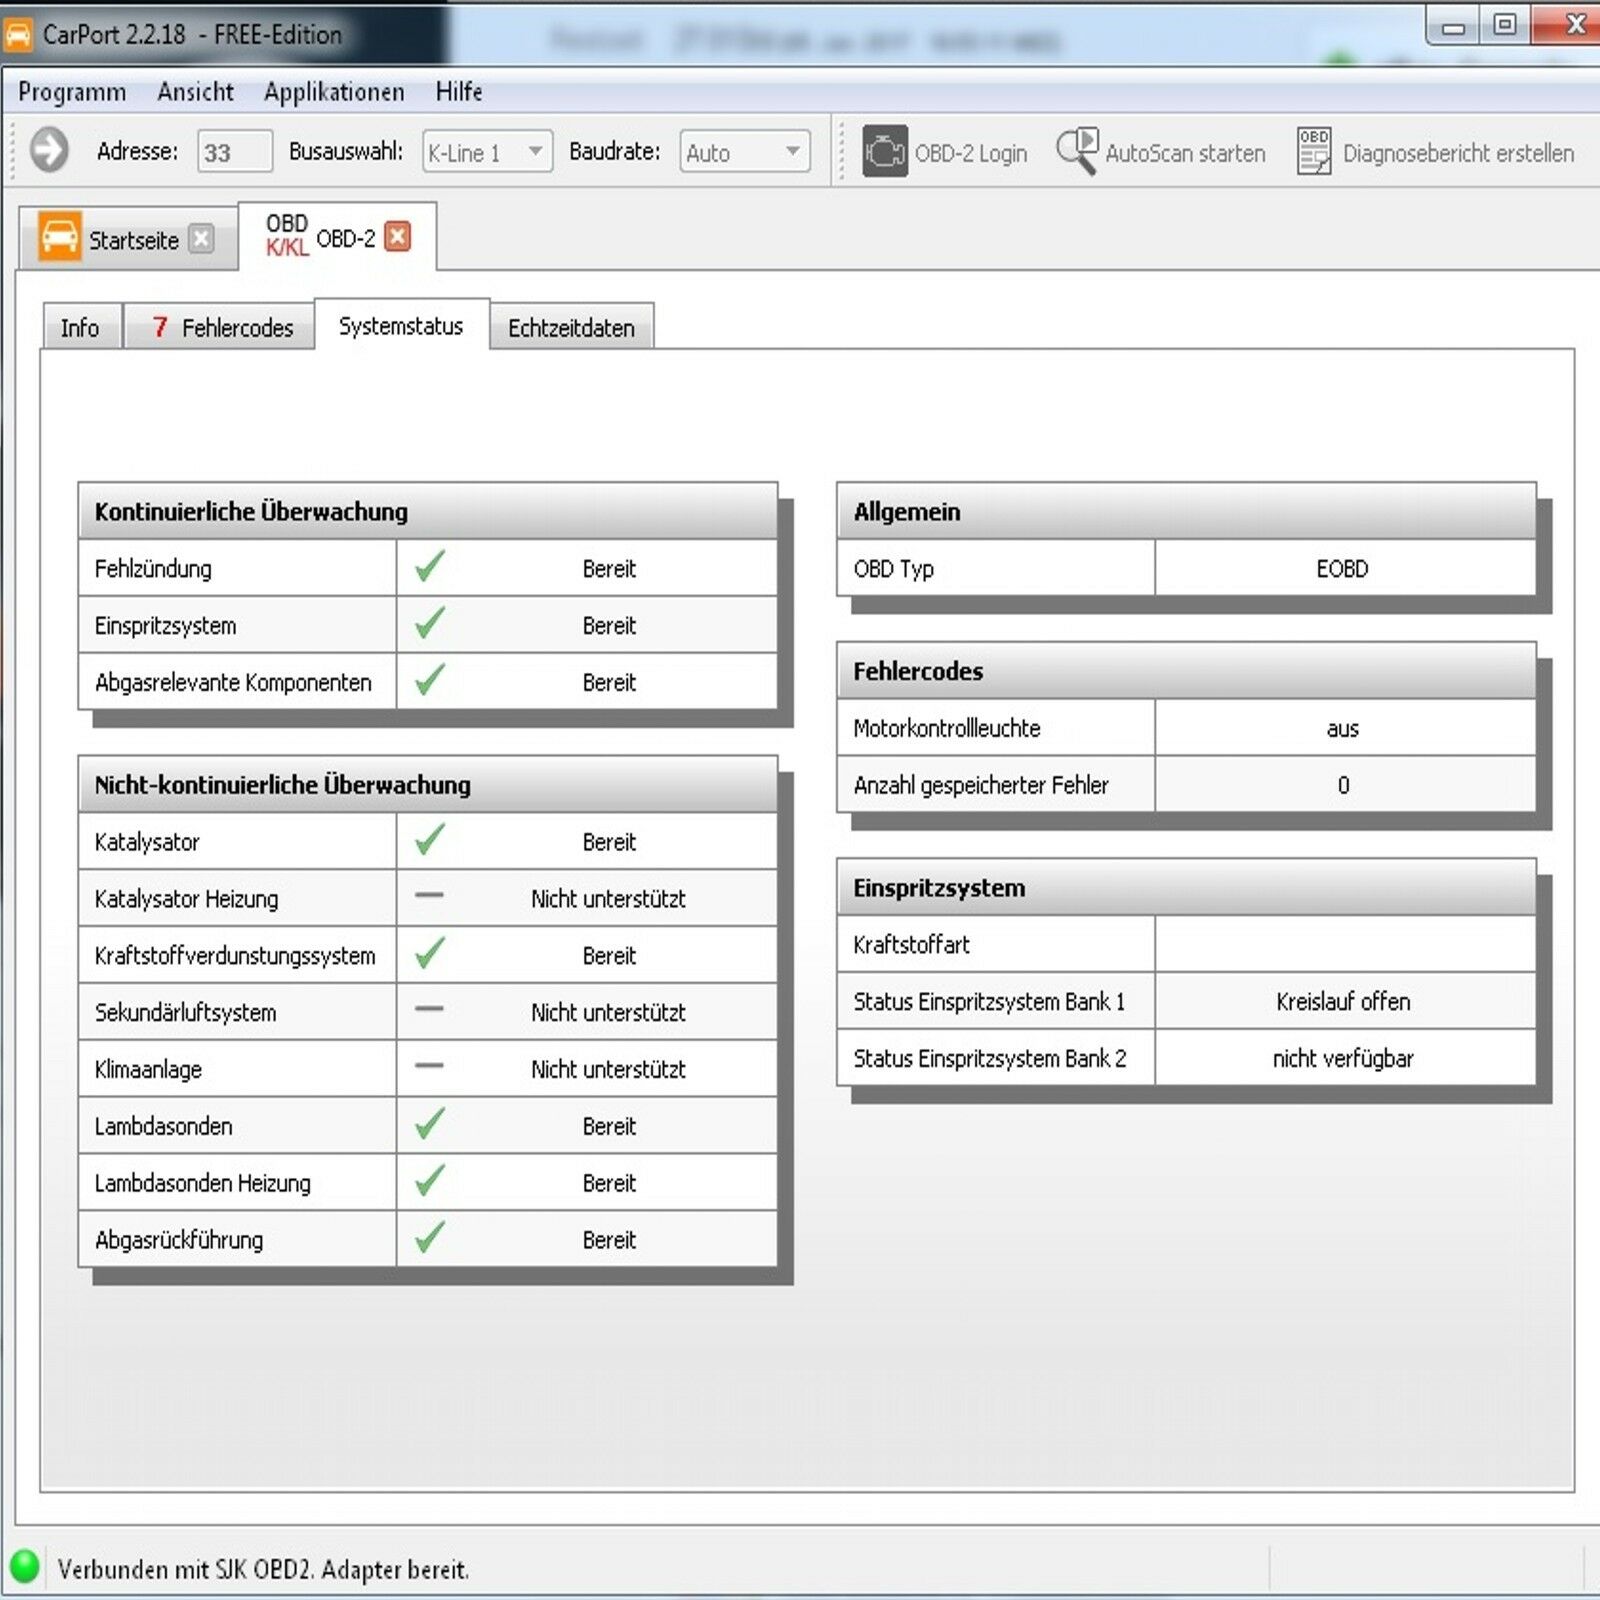 ALLE Marken Diagnose Interface OBD2 KFZ Diagnose Gerät + Carport Lizenz Software